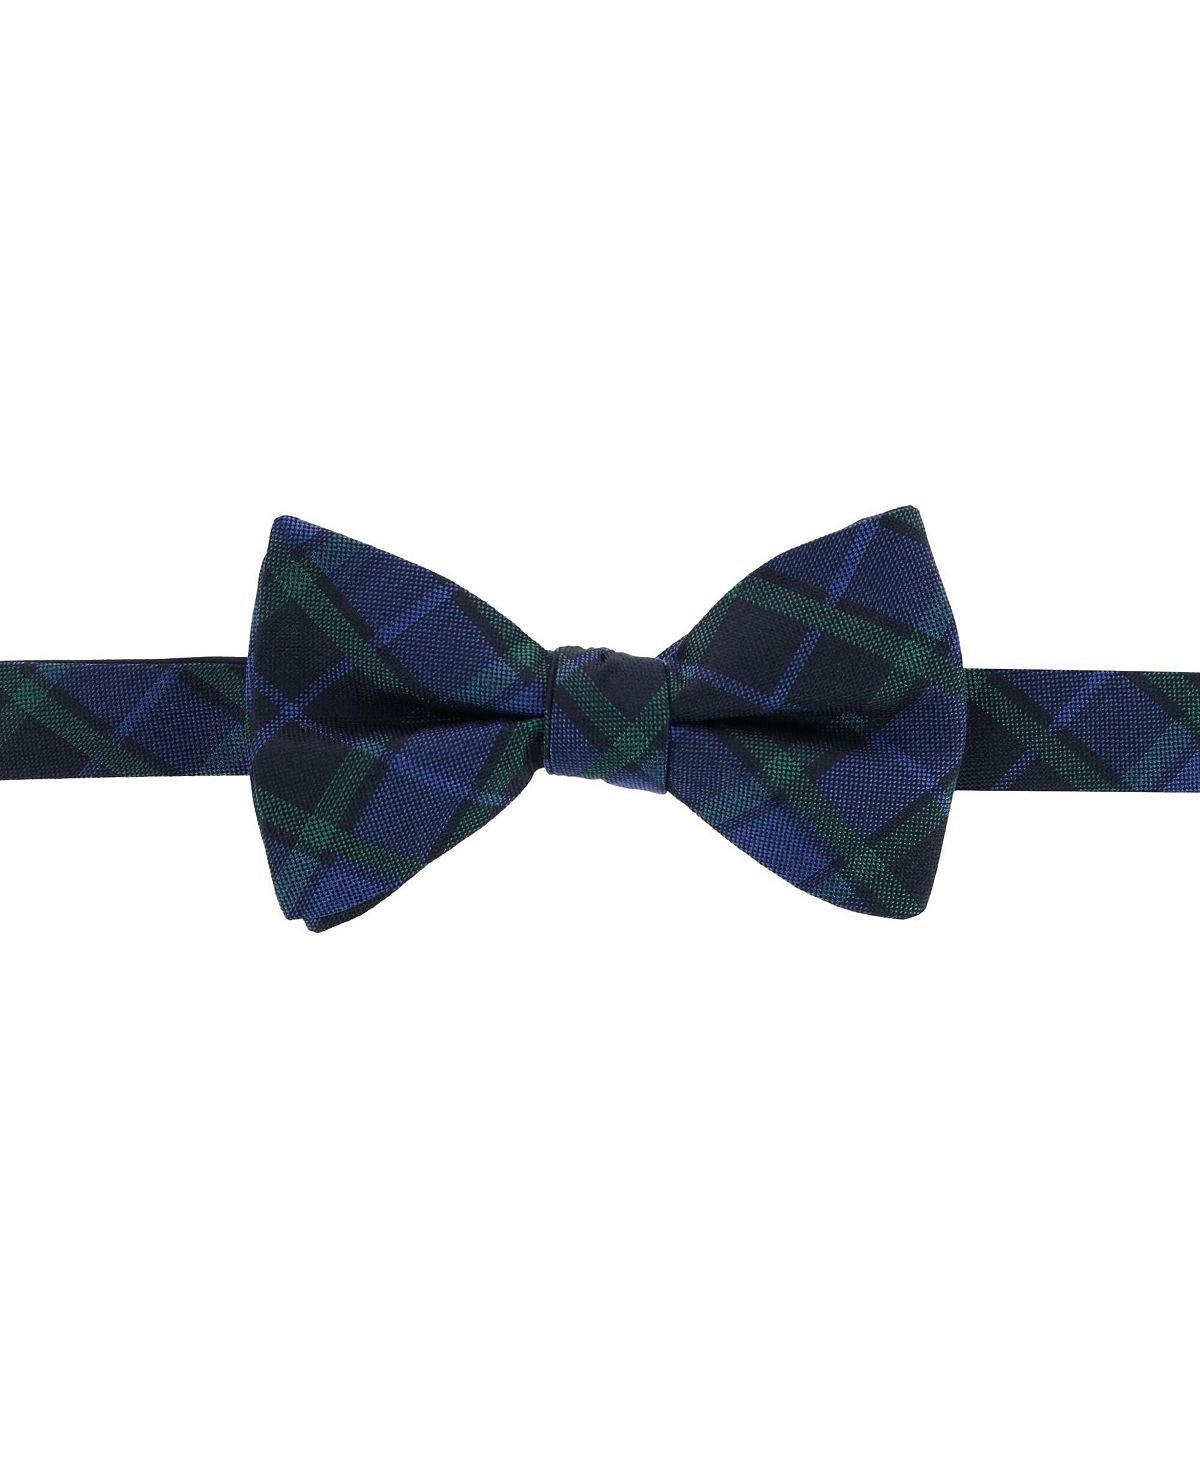 Зелено-темно-синий шелковый галстук-бабочка в клетку Ives Blackwatch TRAFALGAR галстук в клетку синий gulliver